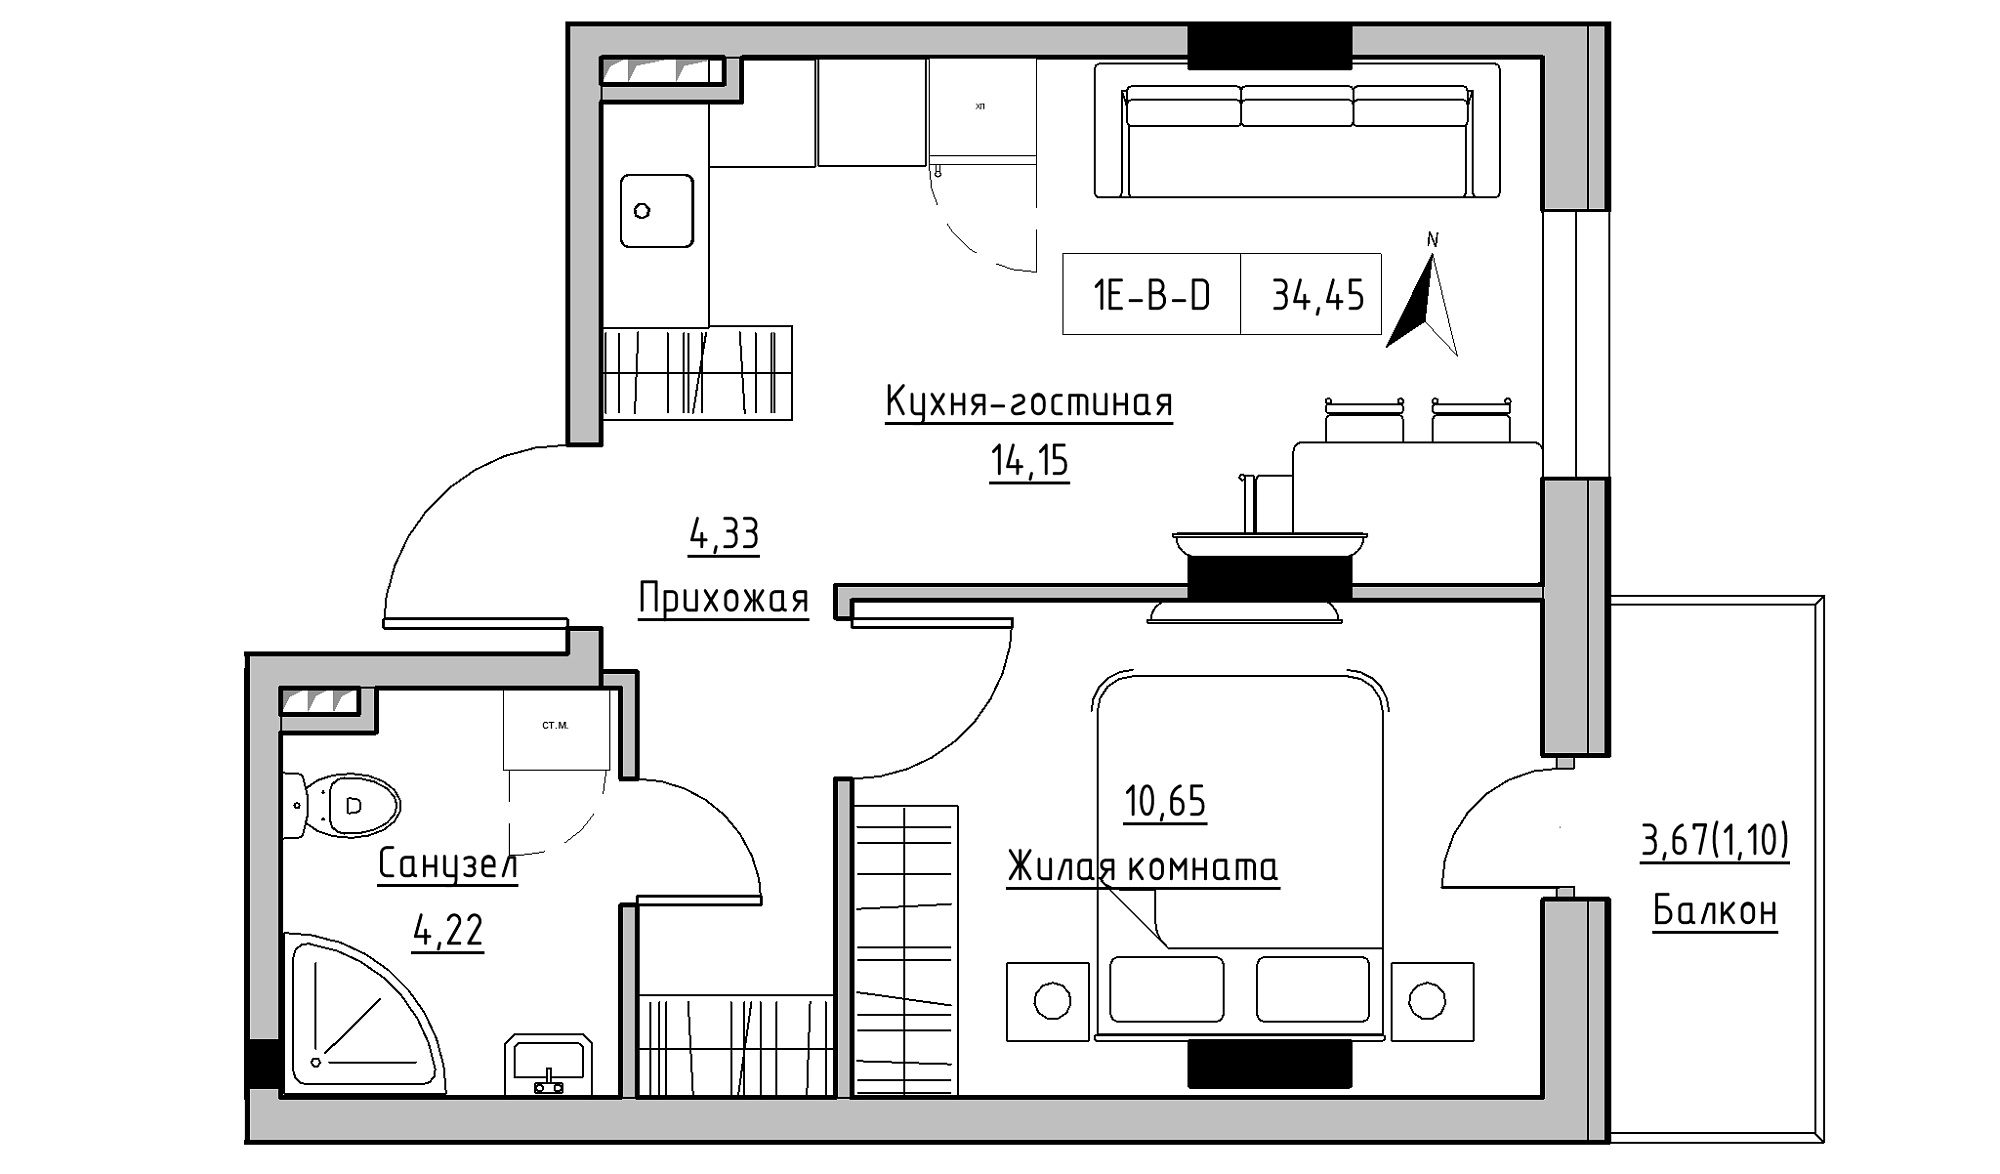 Планировка 1-к квартира площей 34.45м2, KS-025-02/0002.